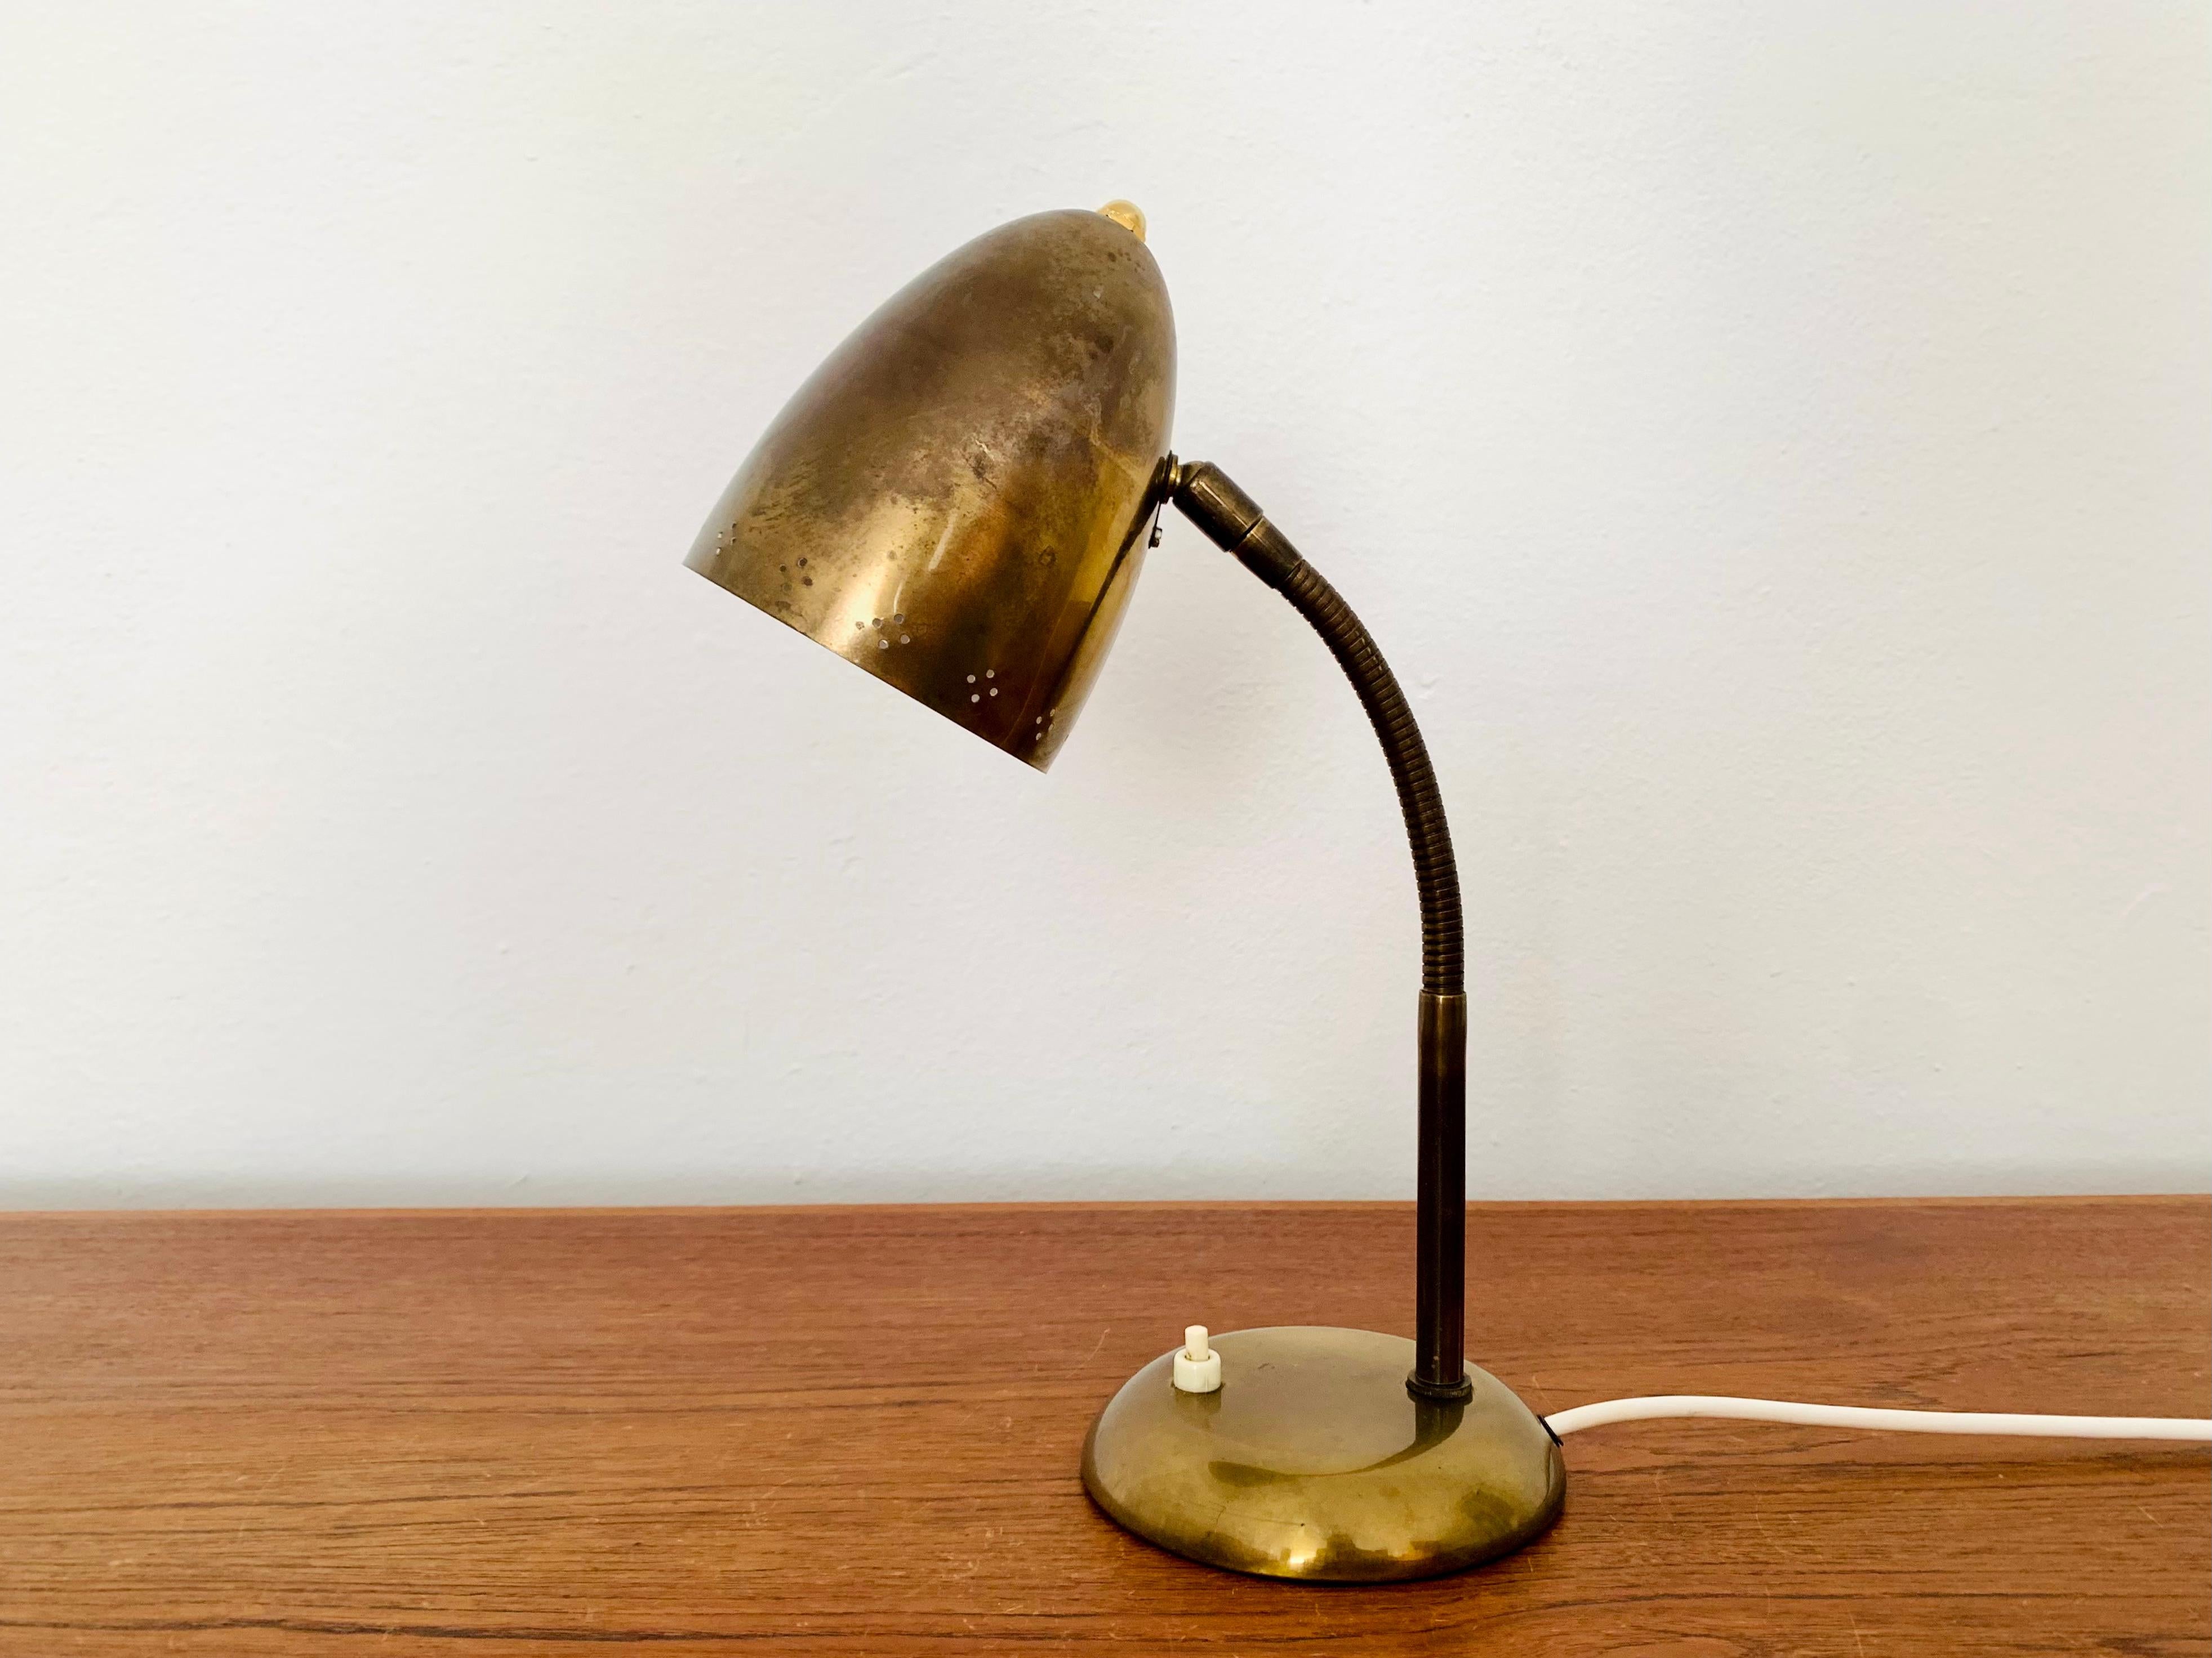 Très belle lampe de table dorée des années 1950.
Fantastique design du milieu du siècle.
La combinaison d'un travail de haute qualité et de détails soignés enrichit chaque maison.
Les trous décoratifs dans l'abat-jour créent un magnifique jeu de